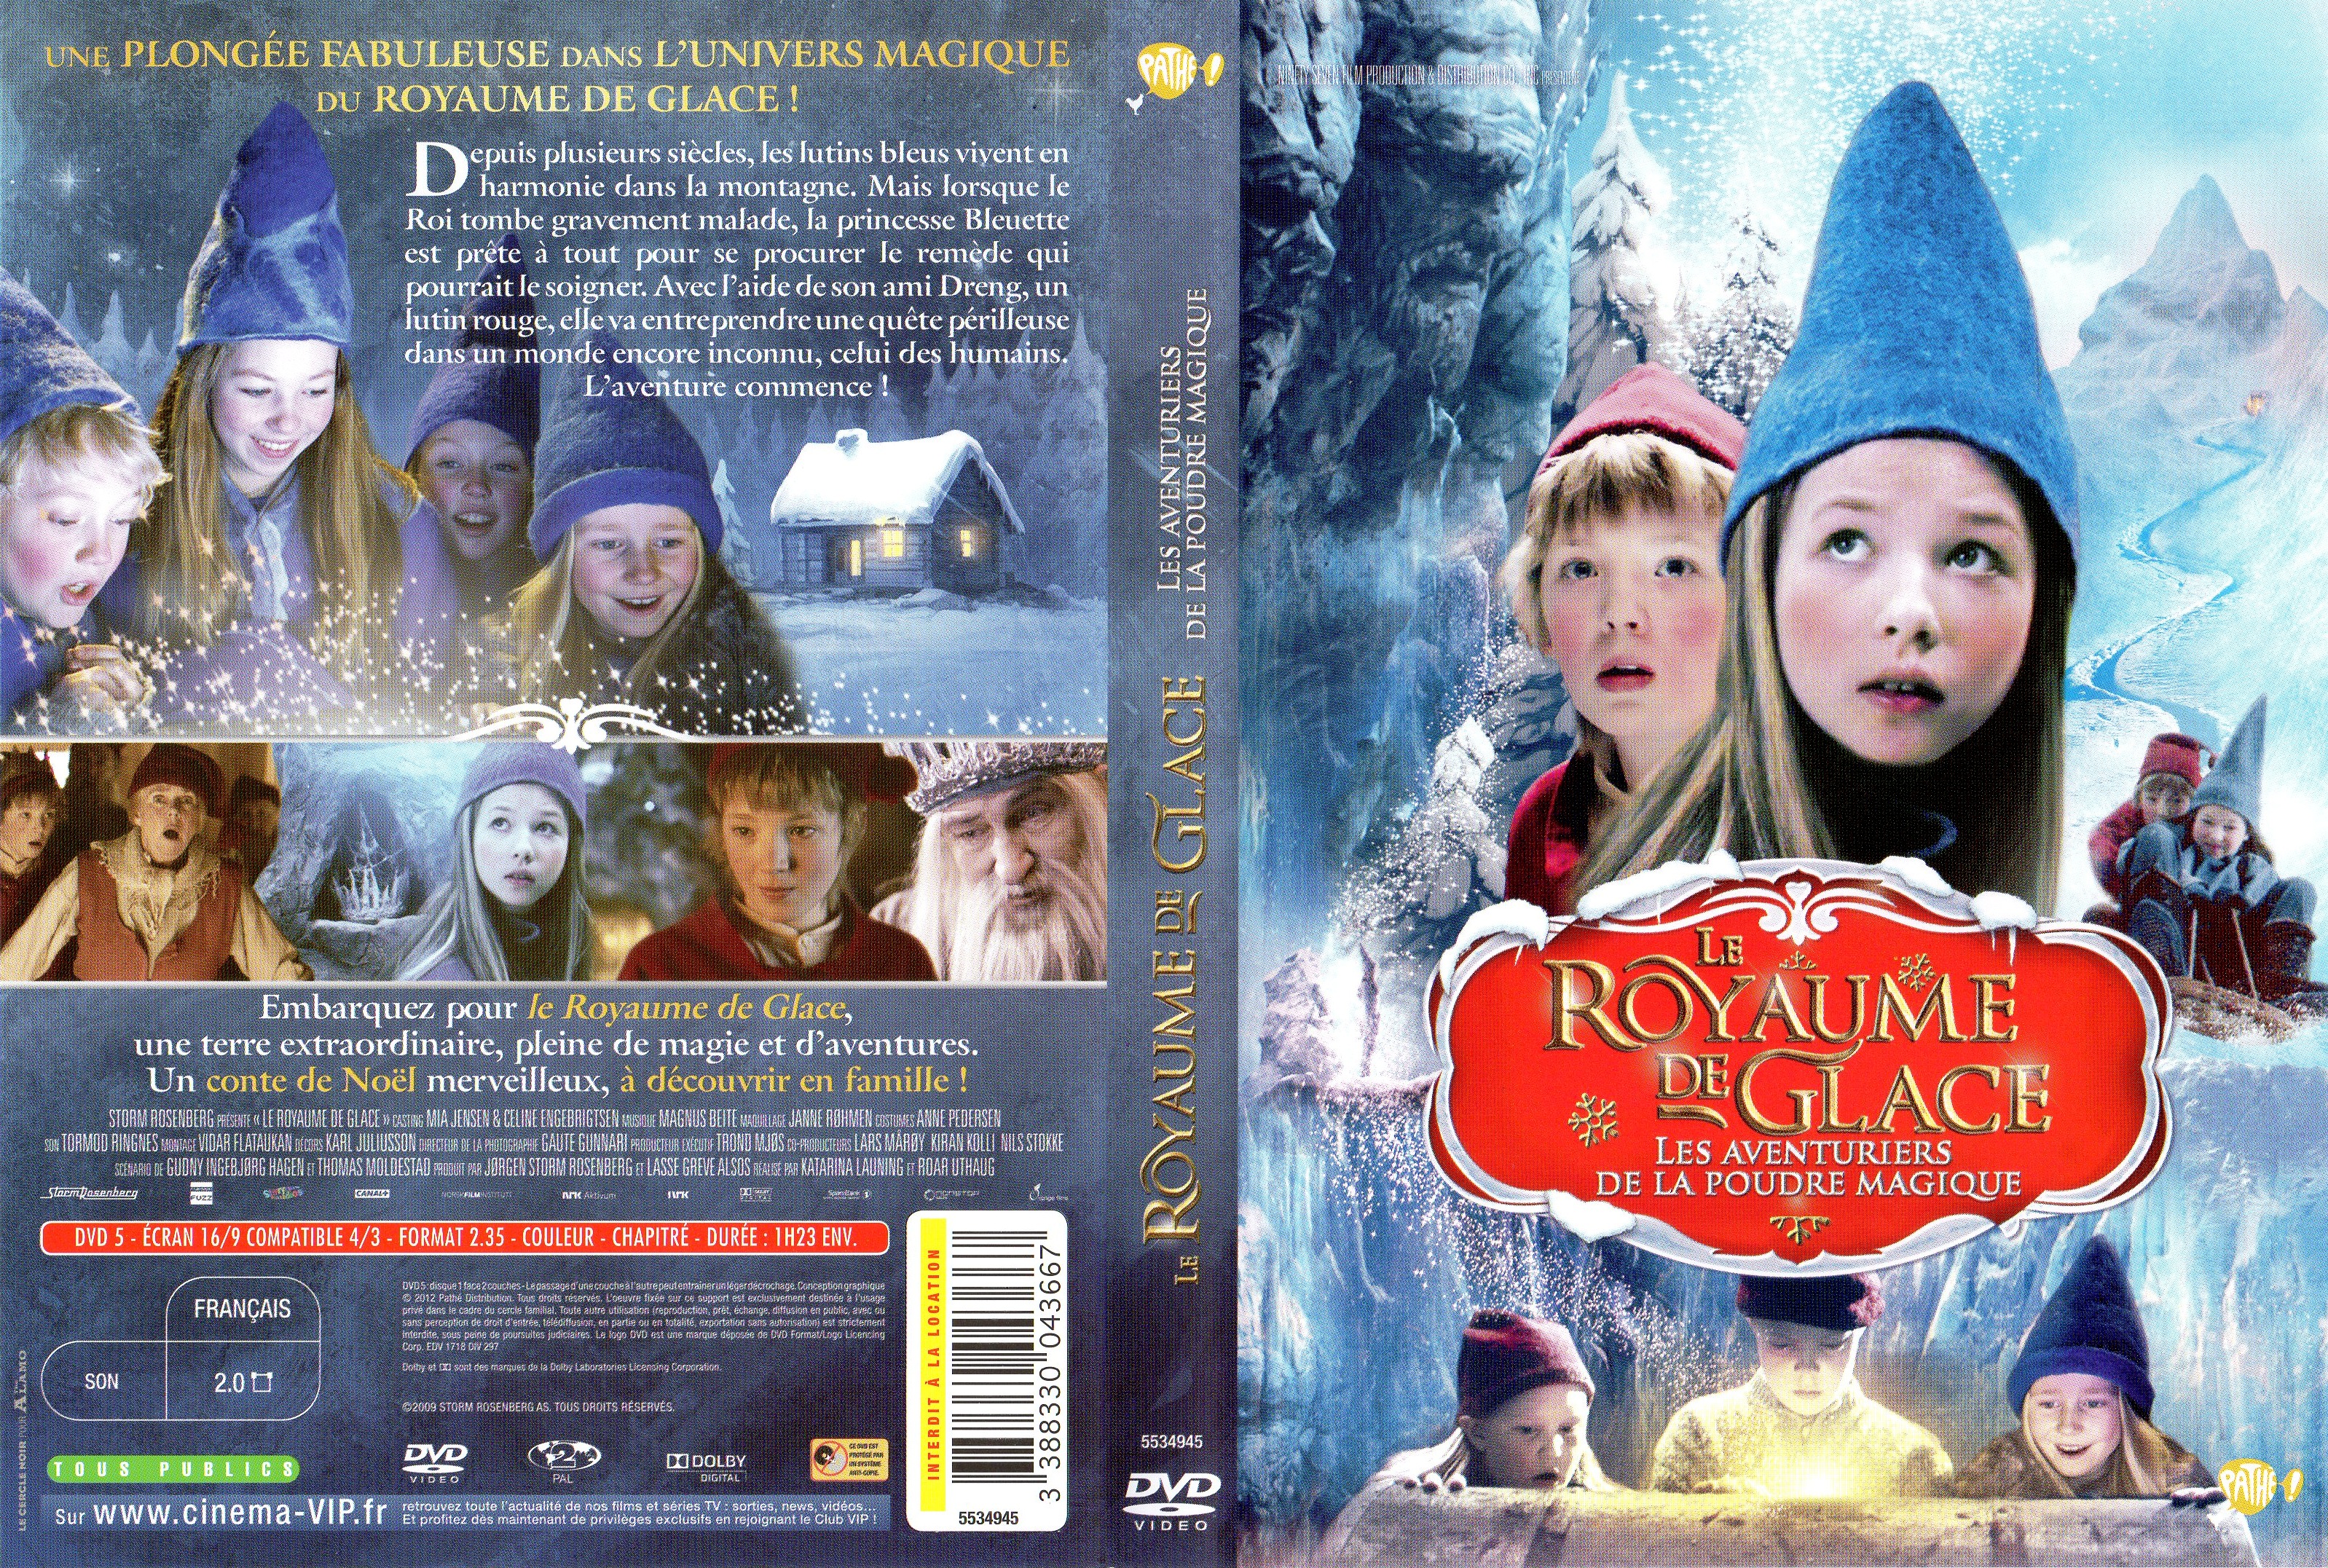 Jaquette DVD Le royaume de glace - Les aventuriers de la poudre magique